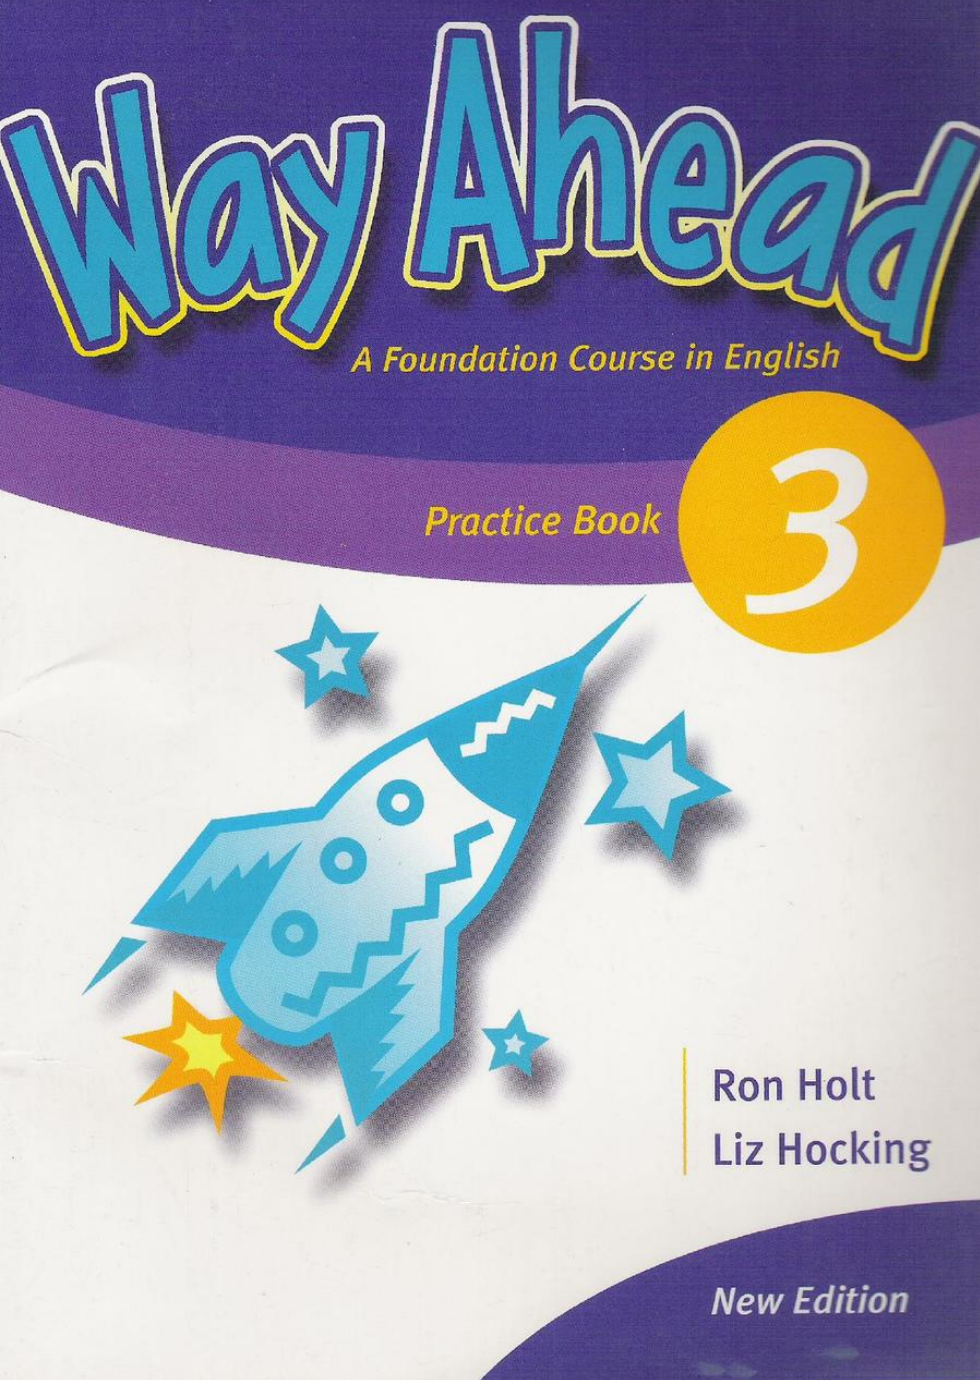 Way Ahead Practice Book 3